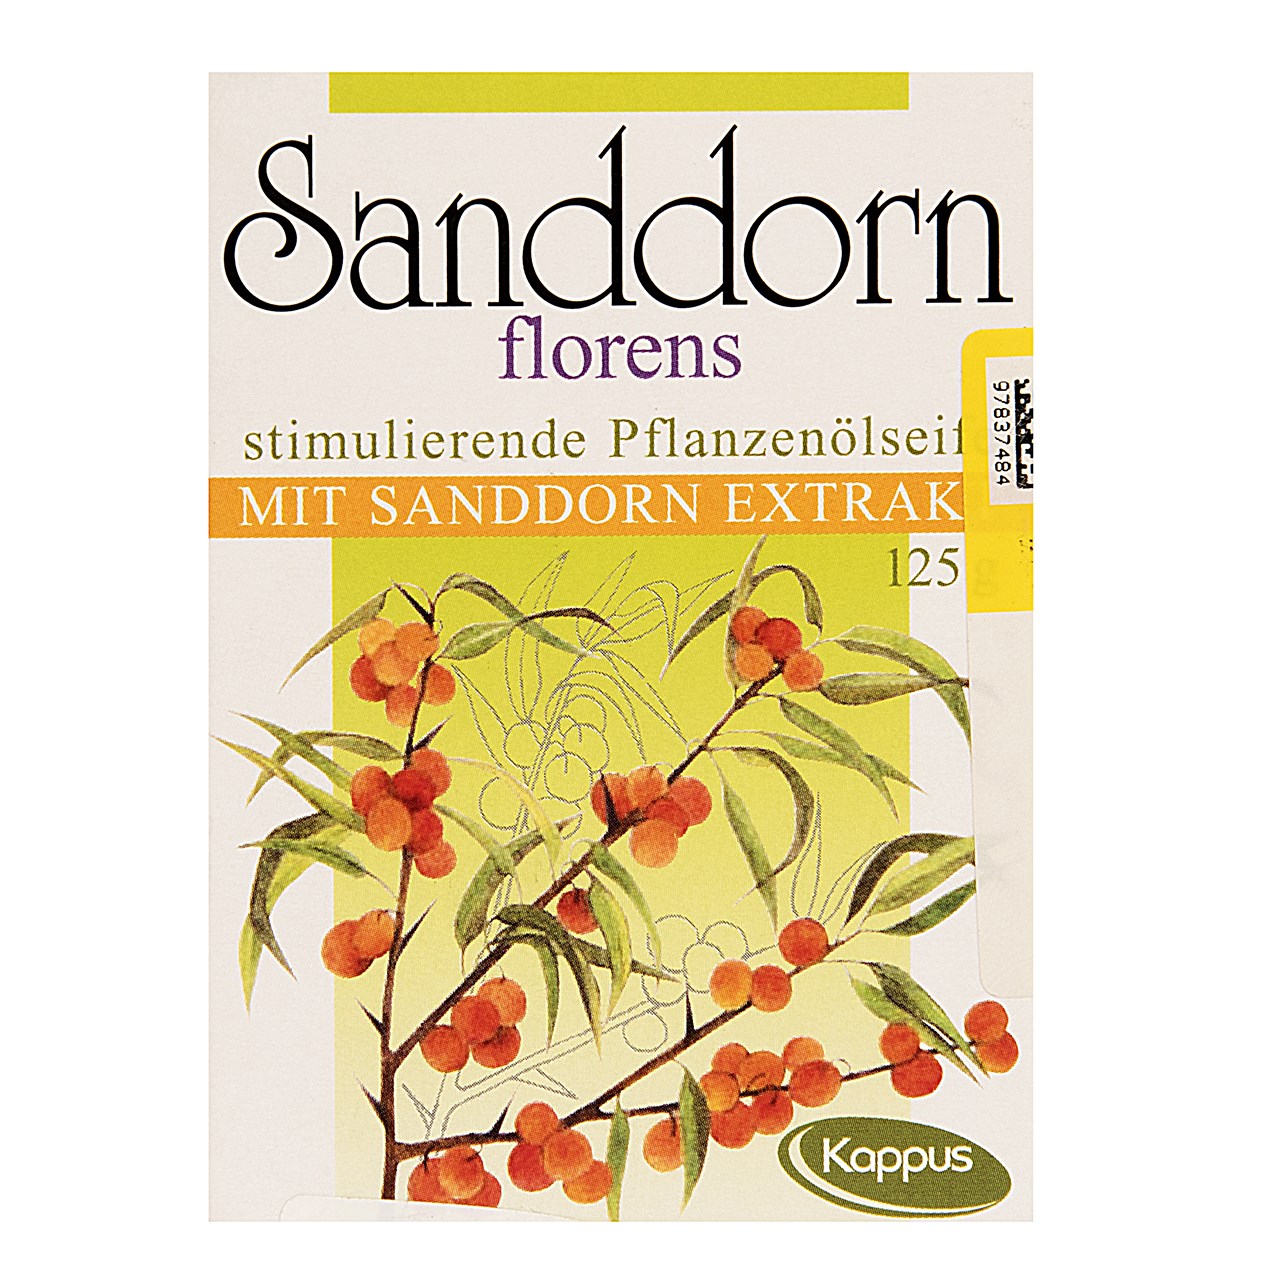 صابون کاپوس مدل Sanddorn Florens مقدار 125 گرم